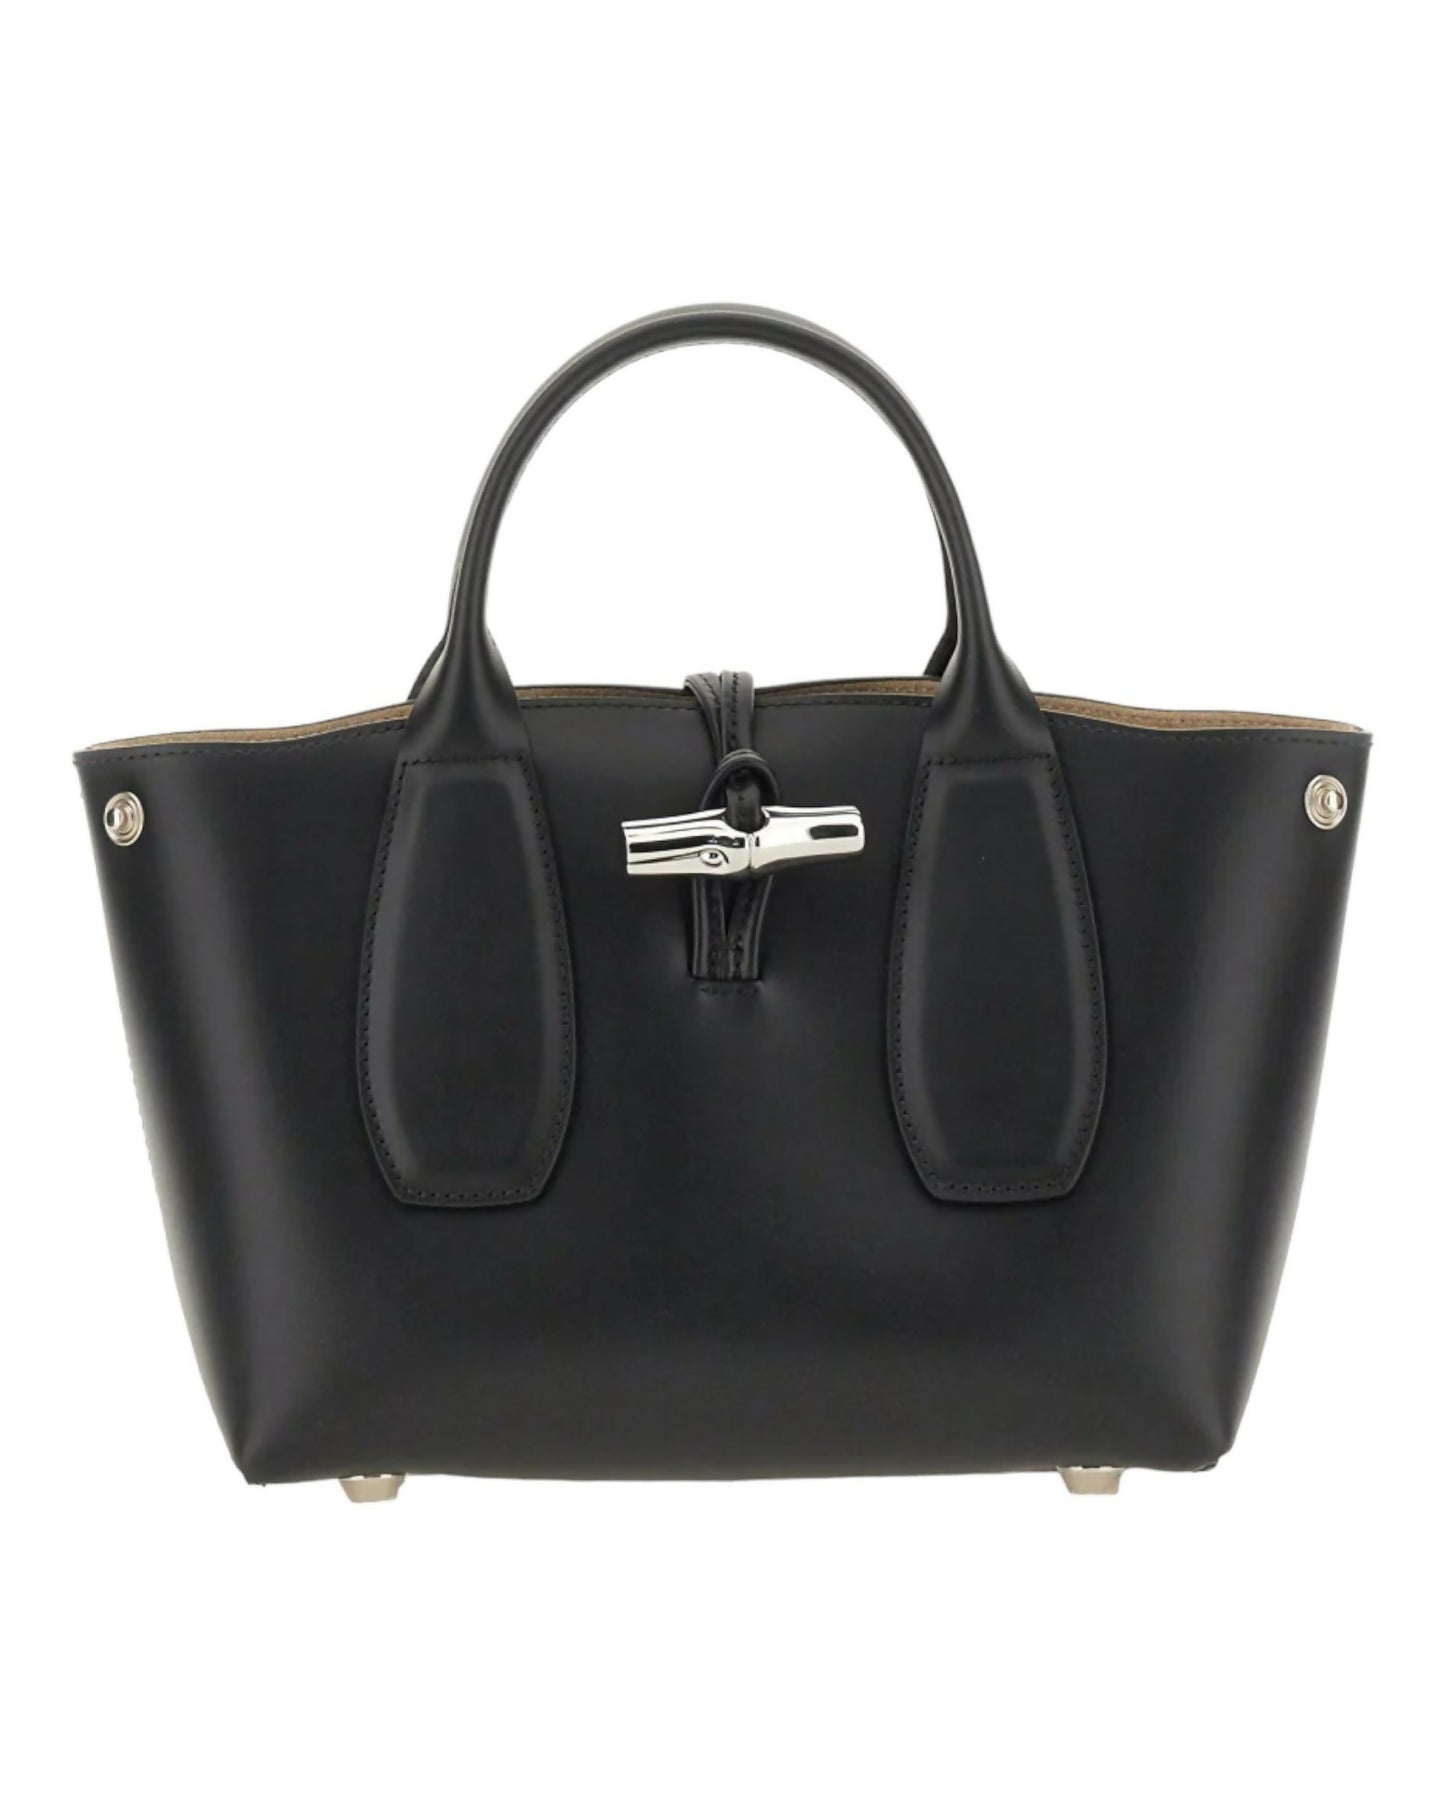 Longchamp, Roseau Small Top Handle Bag